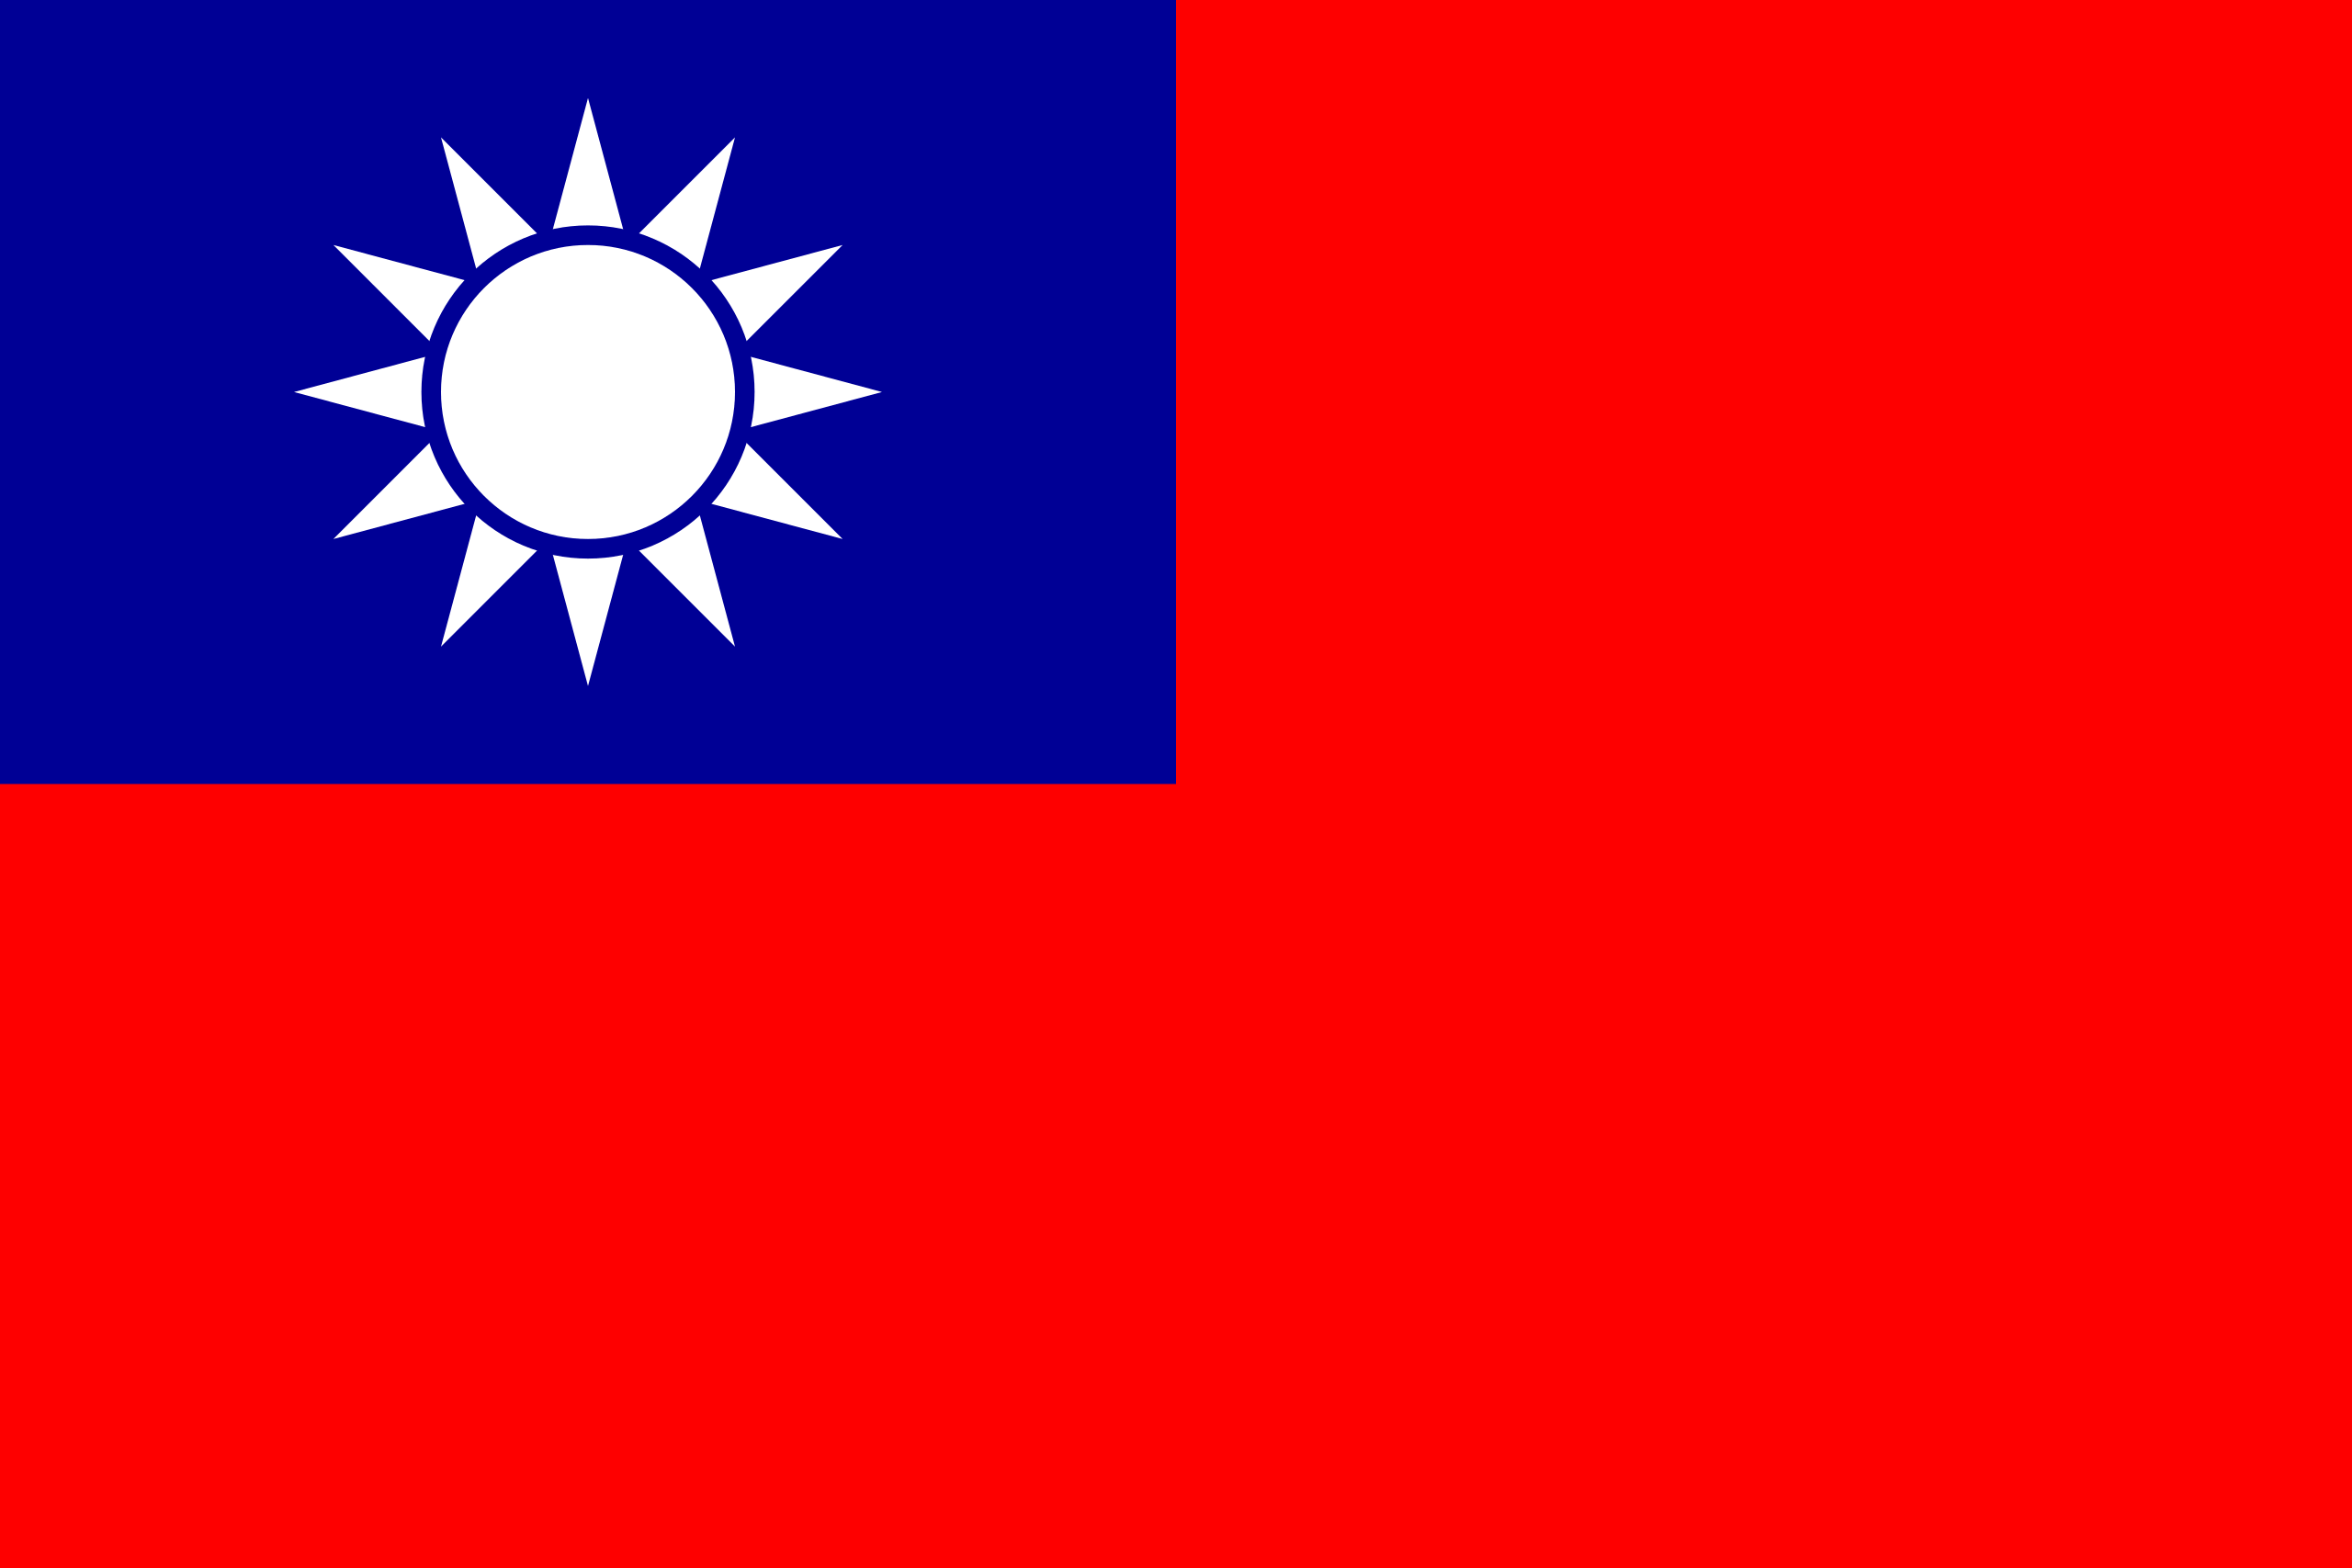 Taiwans flag